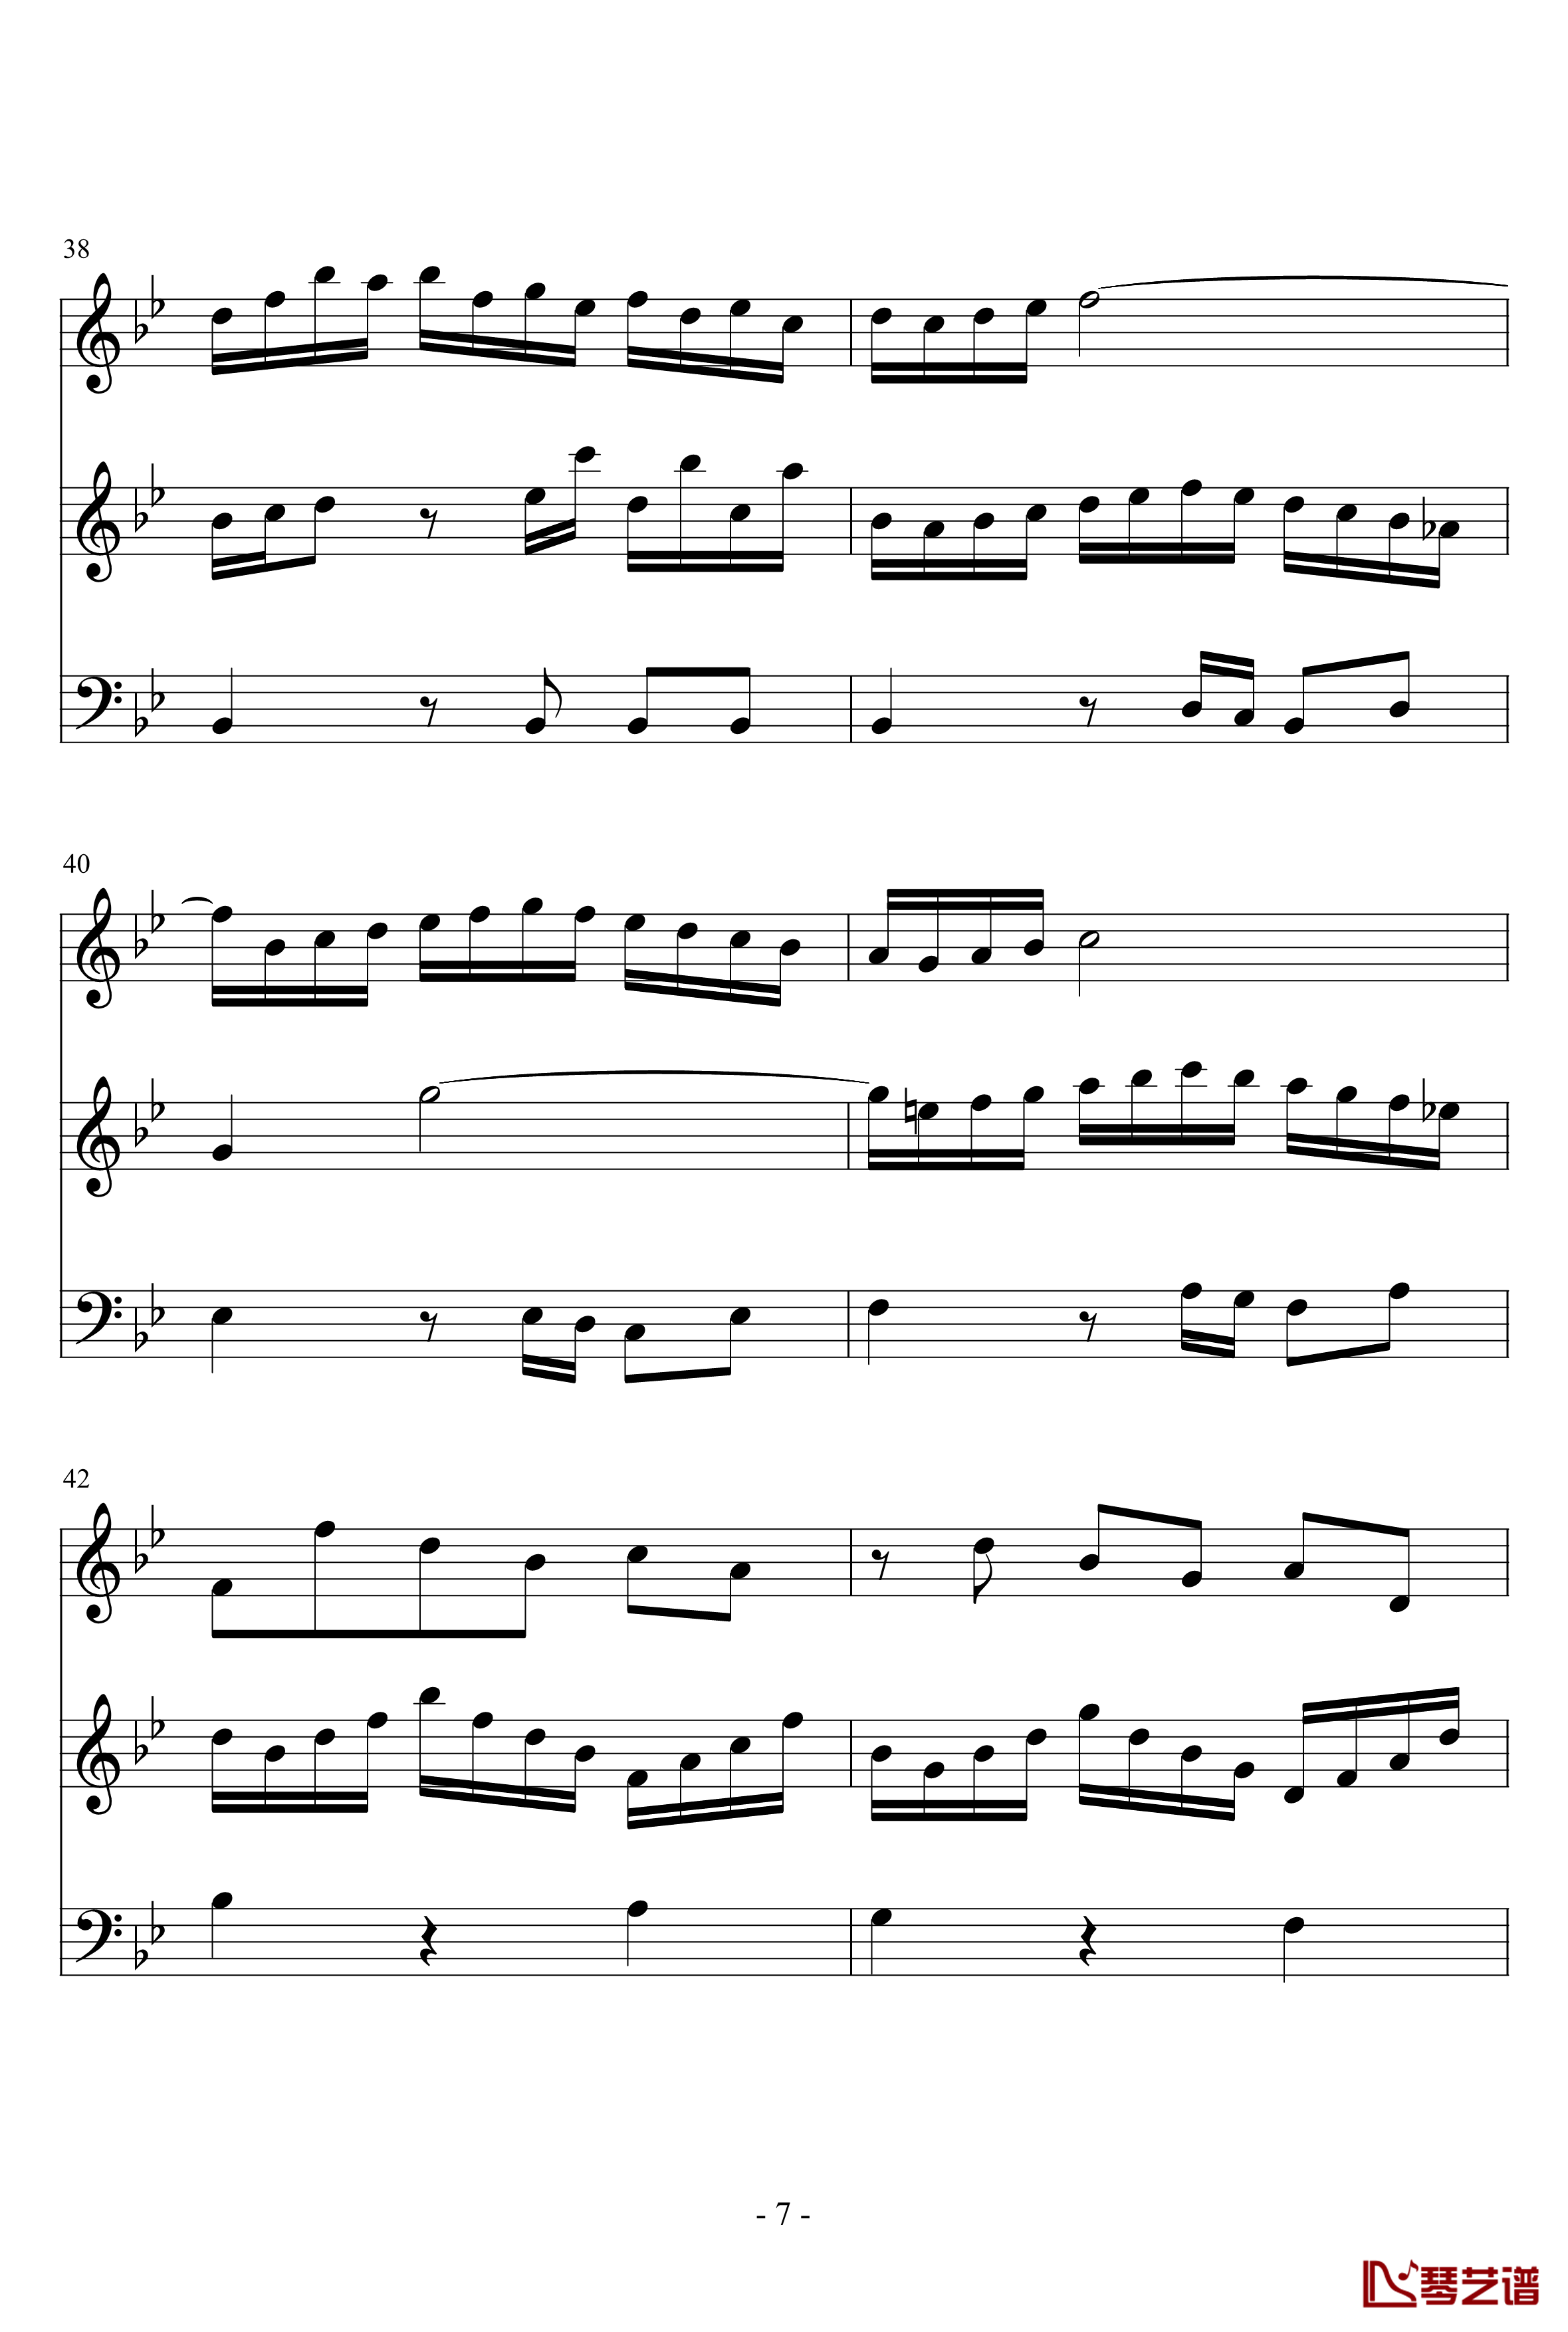 长笛与羽管键琴奏鸣曲第一乐章钢琴谱-巴赫-P.E.Bach7